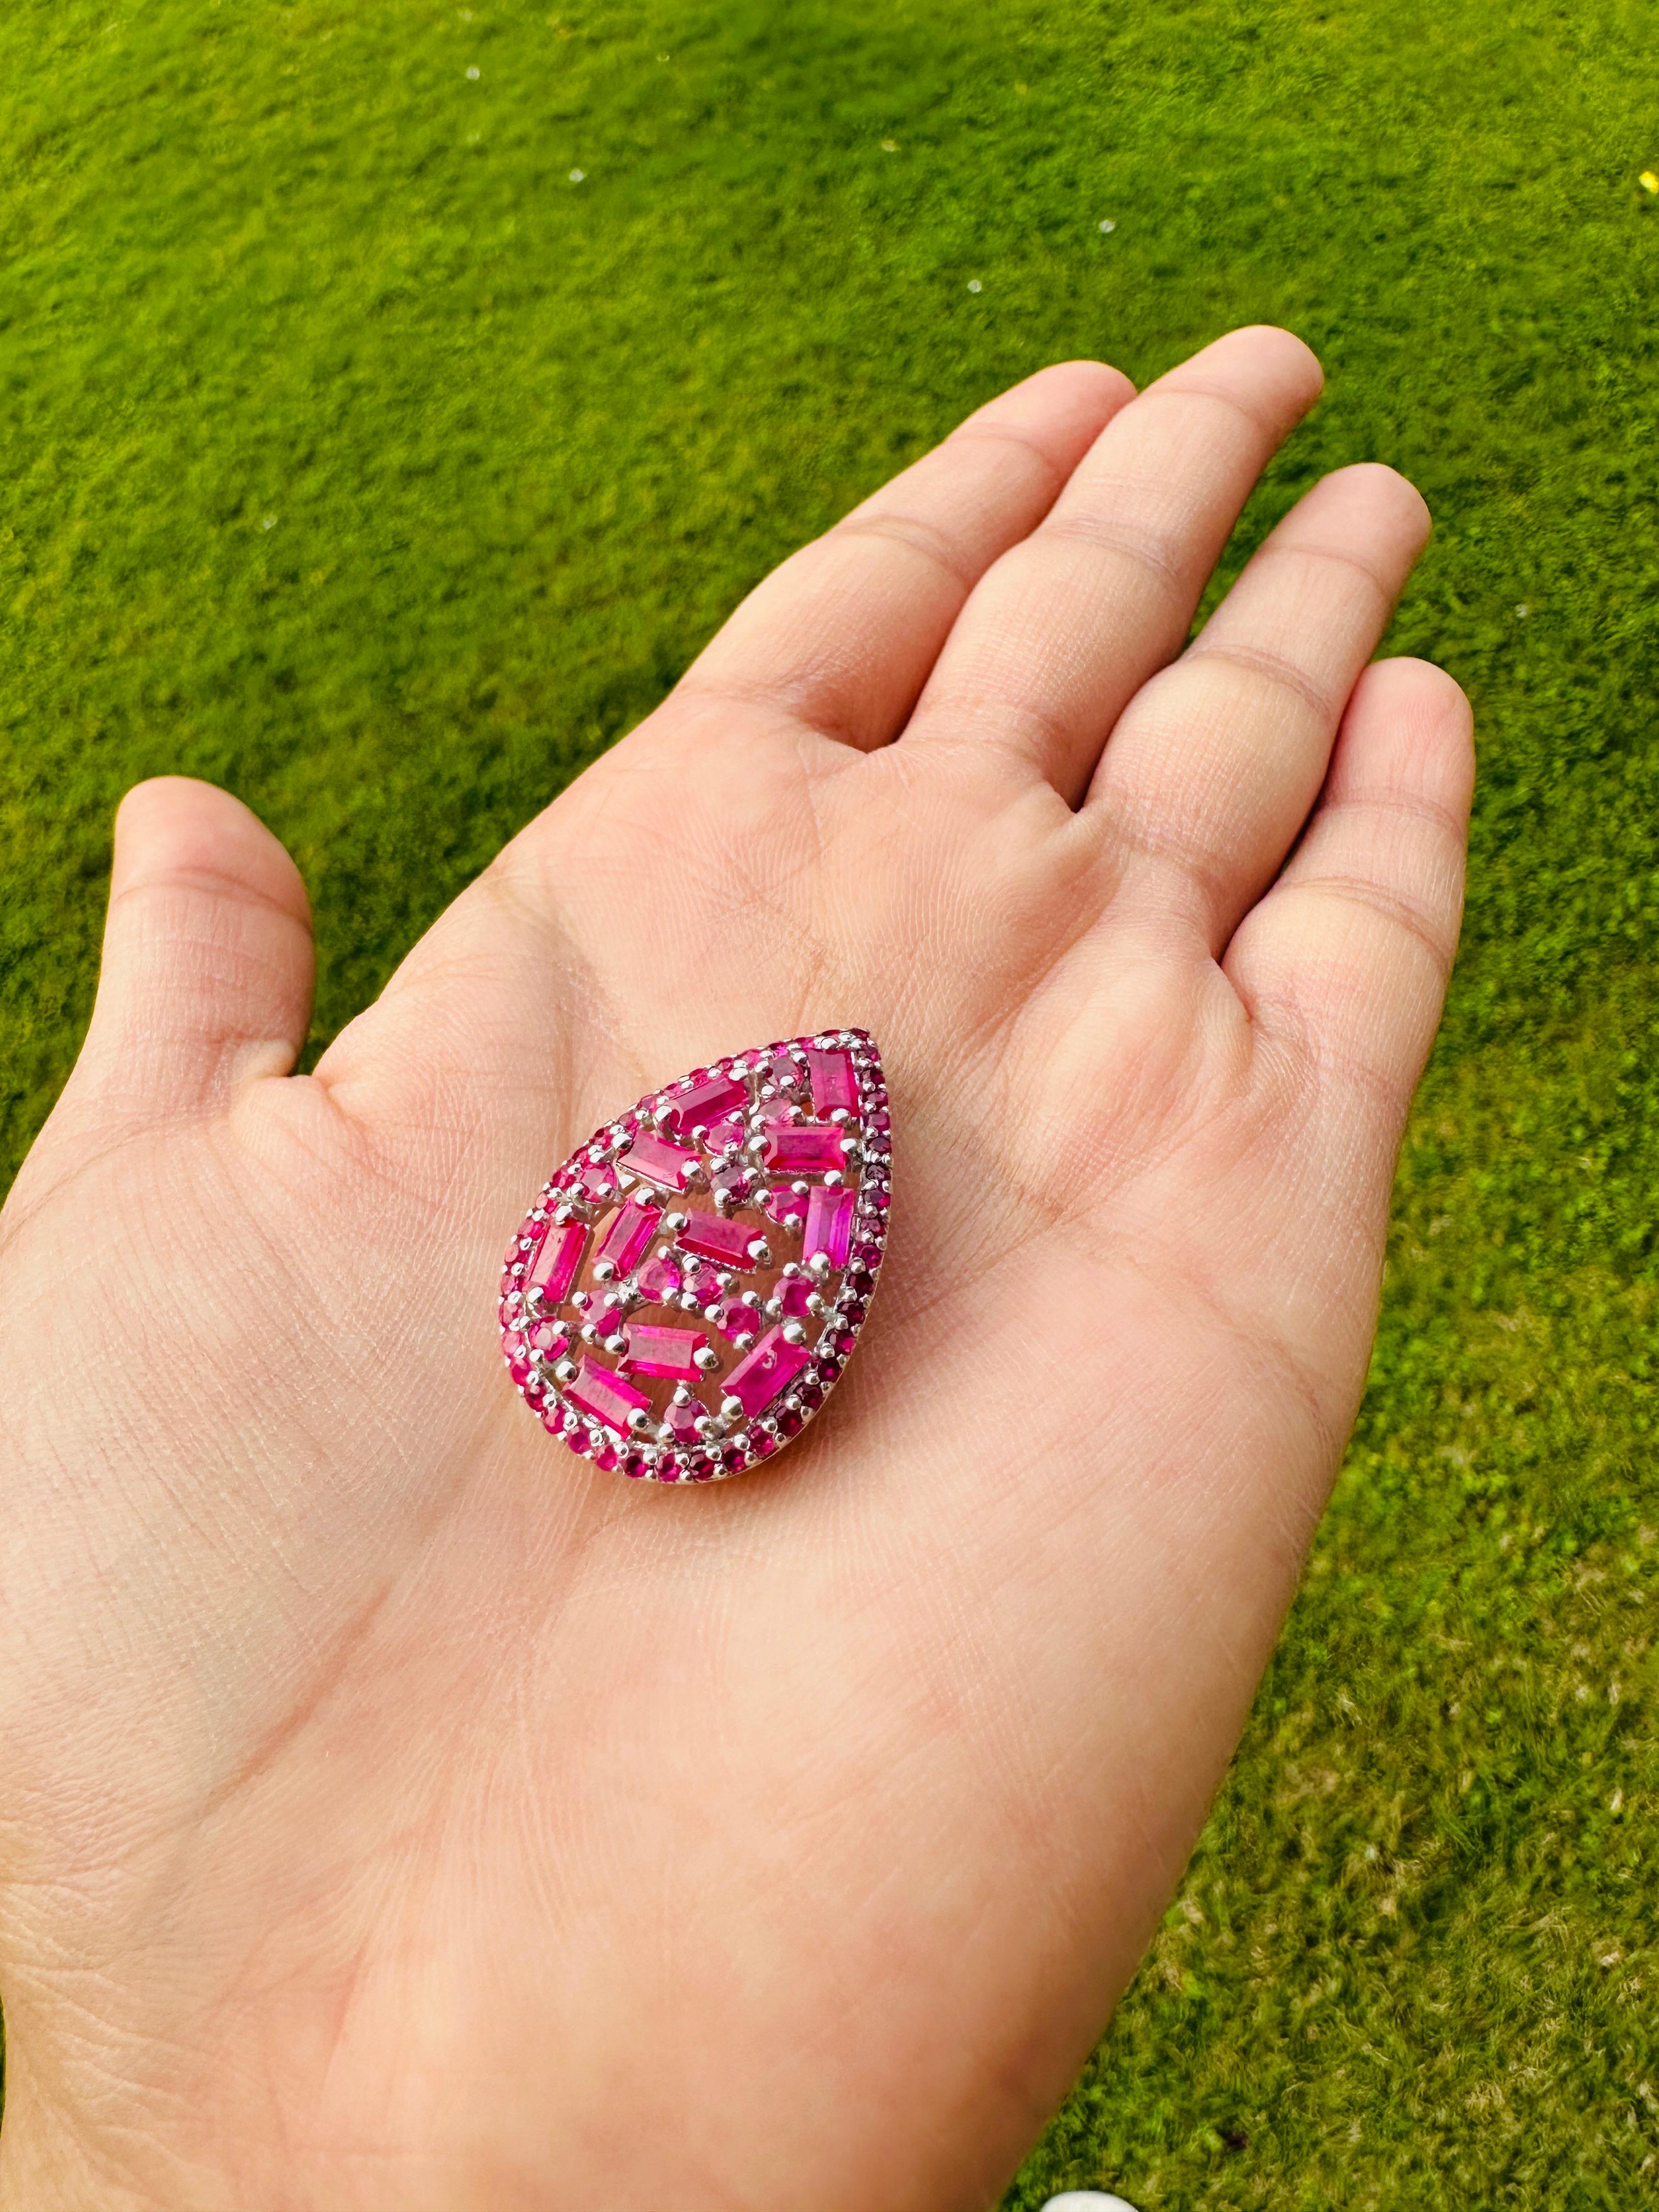 Diese Big Ruby Cluster Pear Shaped Brooch wertet Ihre Kleidung auf und ist perfekt, um jedem Outfit einen Hauch von Eleganz und Charme zu verleihen. Mit exquisiter Handwerkskunst gefertigt und mit einem schillernden Rubin verziert, der das